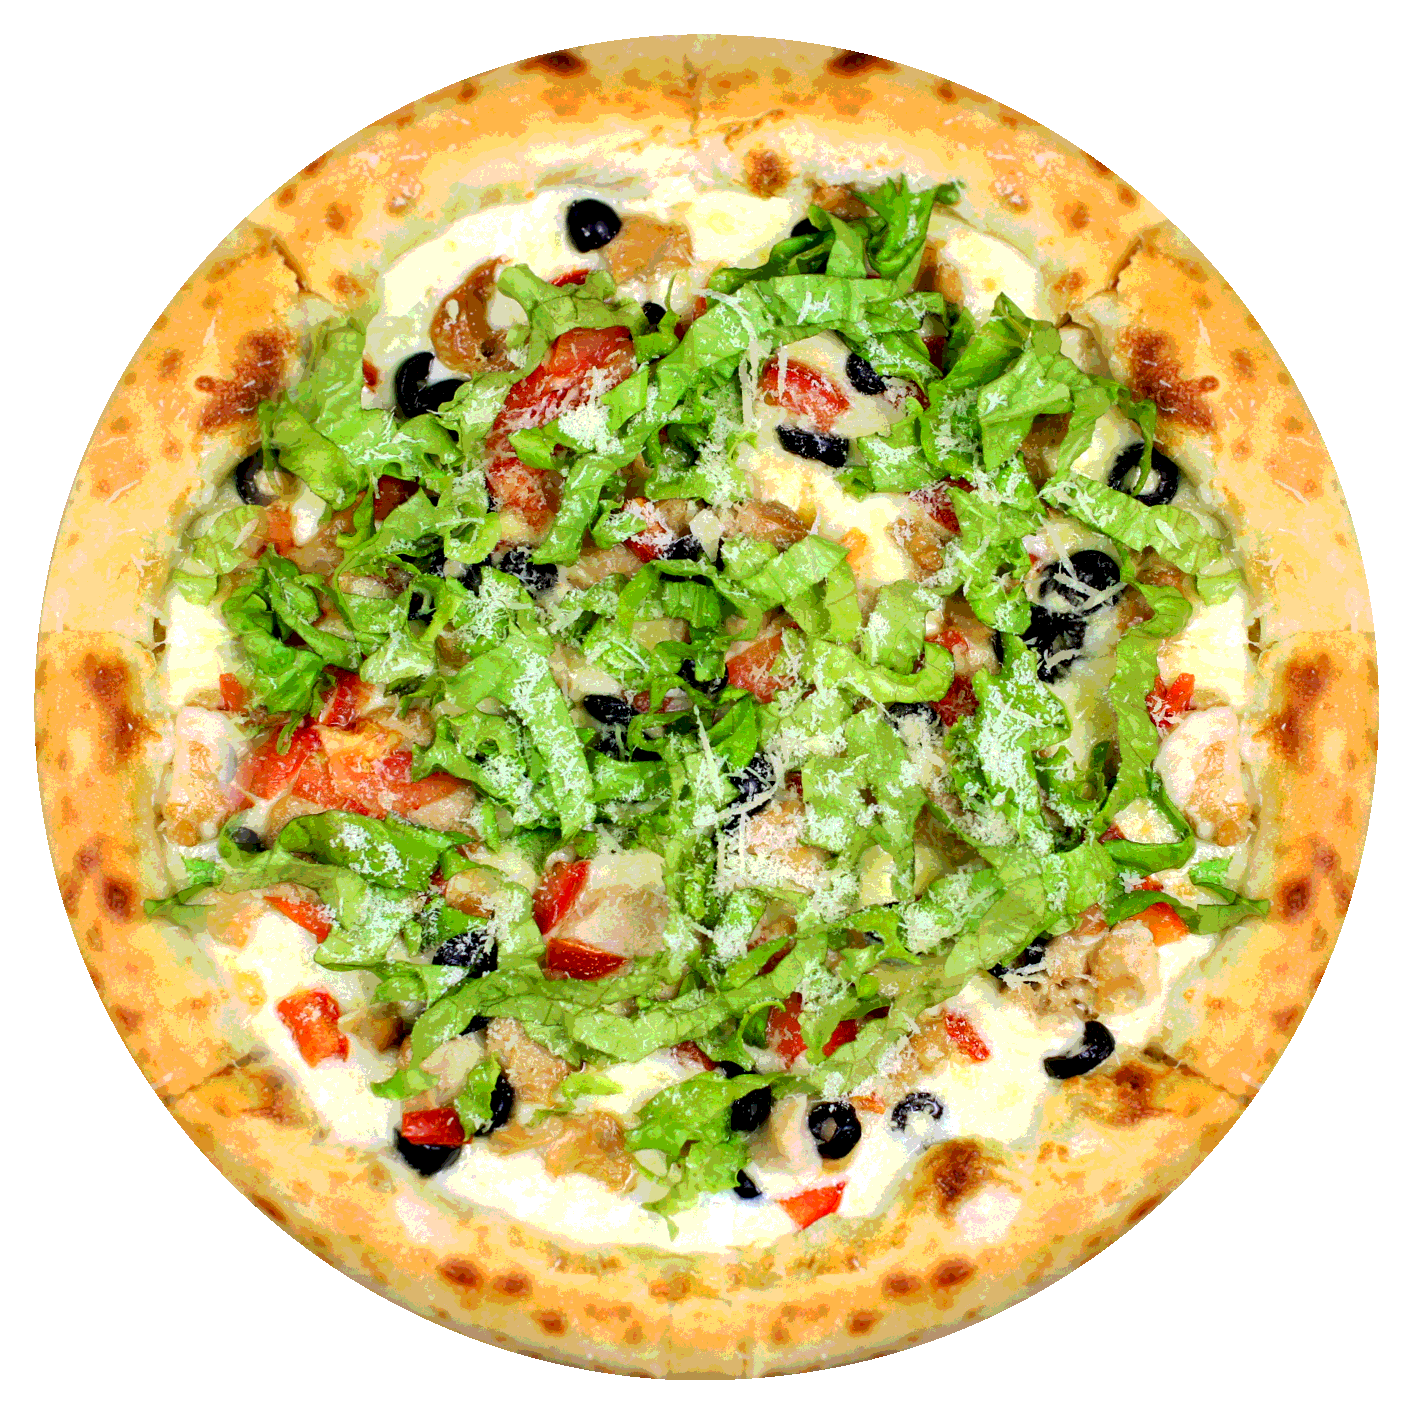 наконец то я могу заказать пиццу с салатом цезарь фото 112